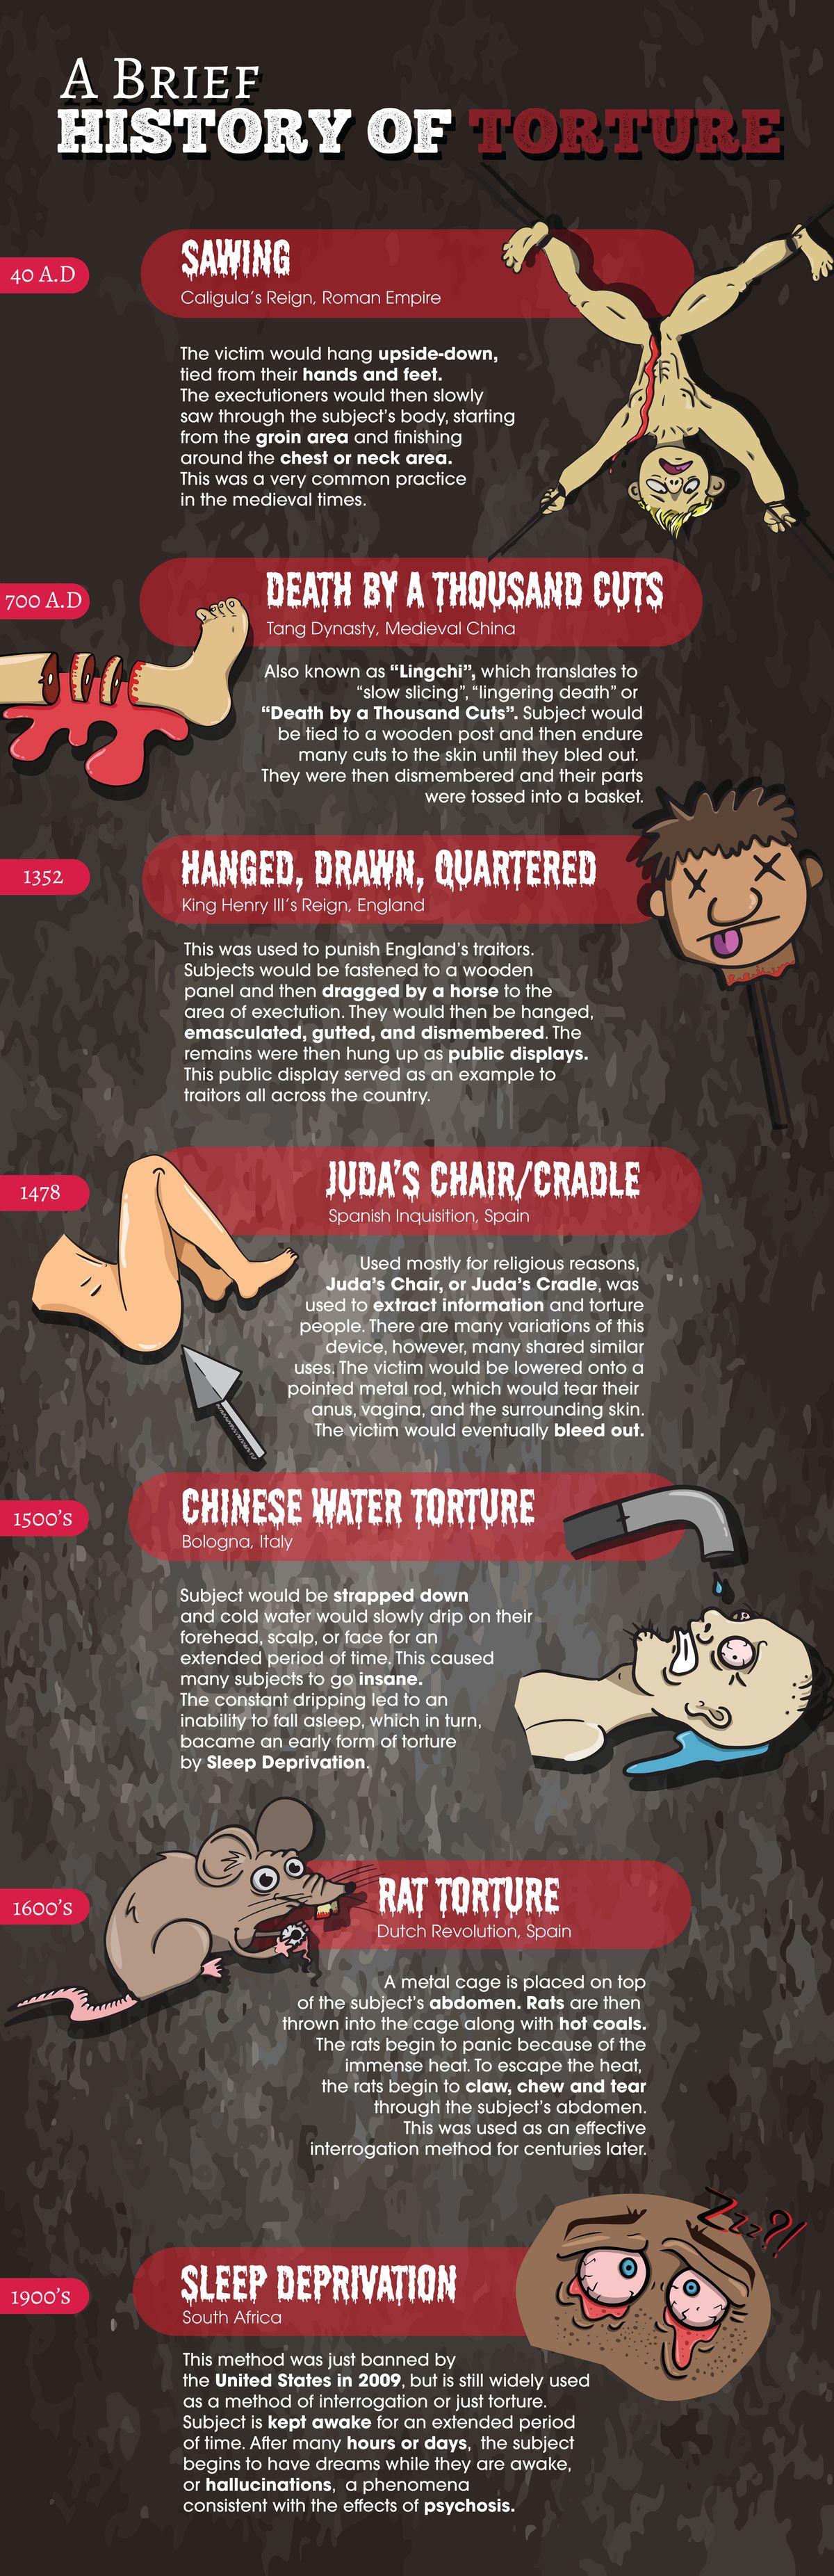 Timeline of Torture